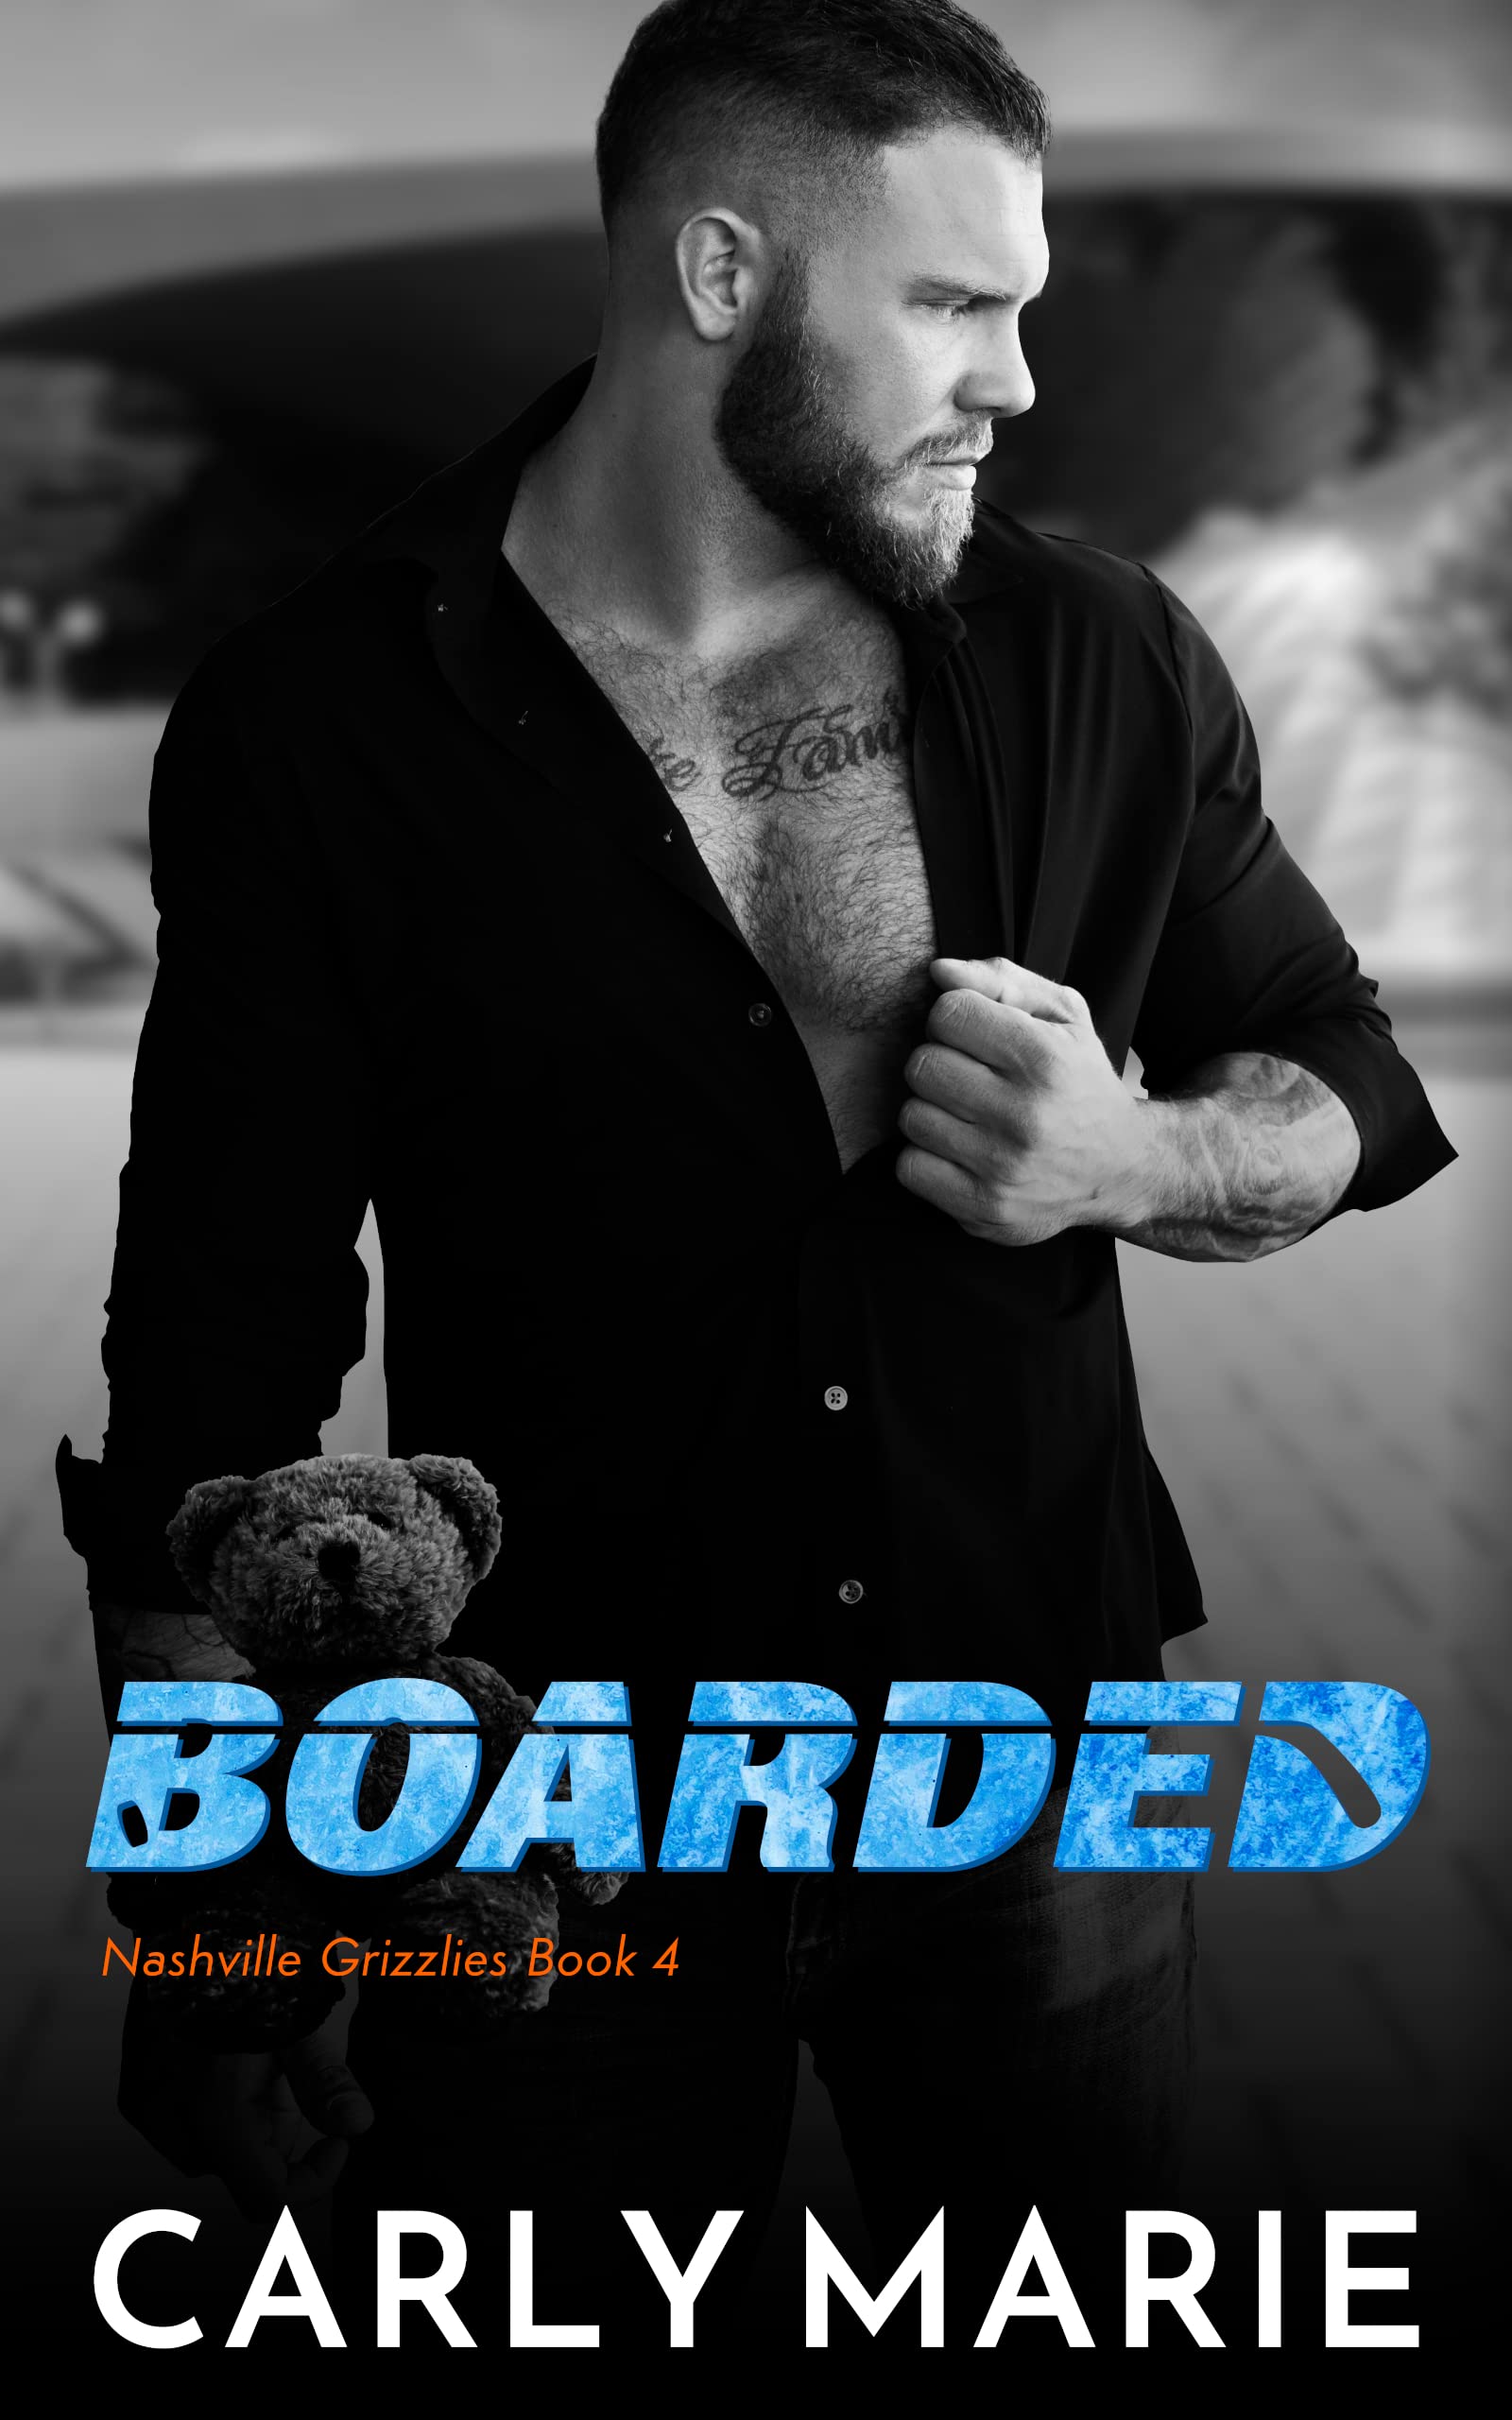 Boarded